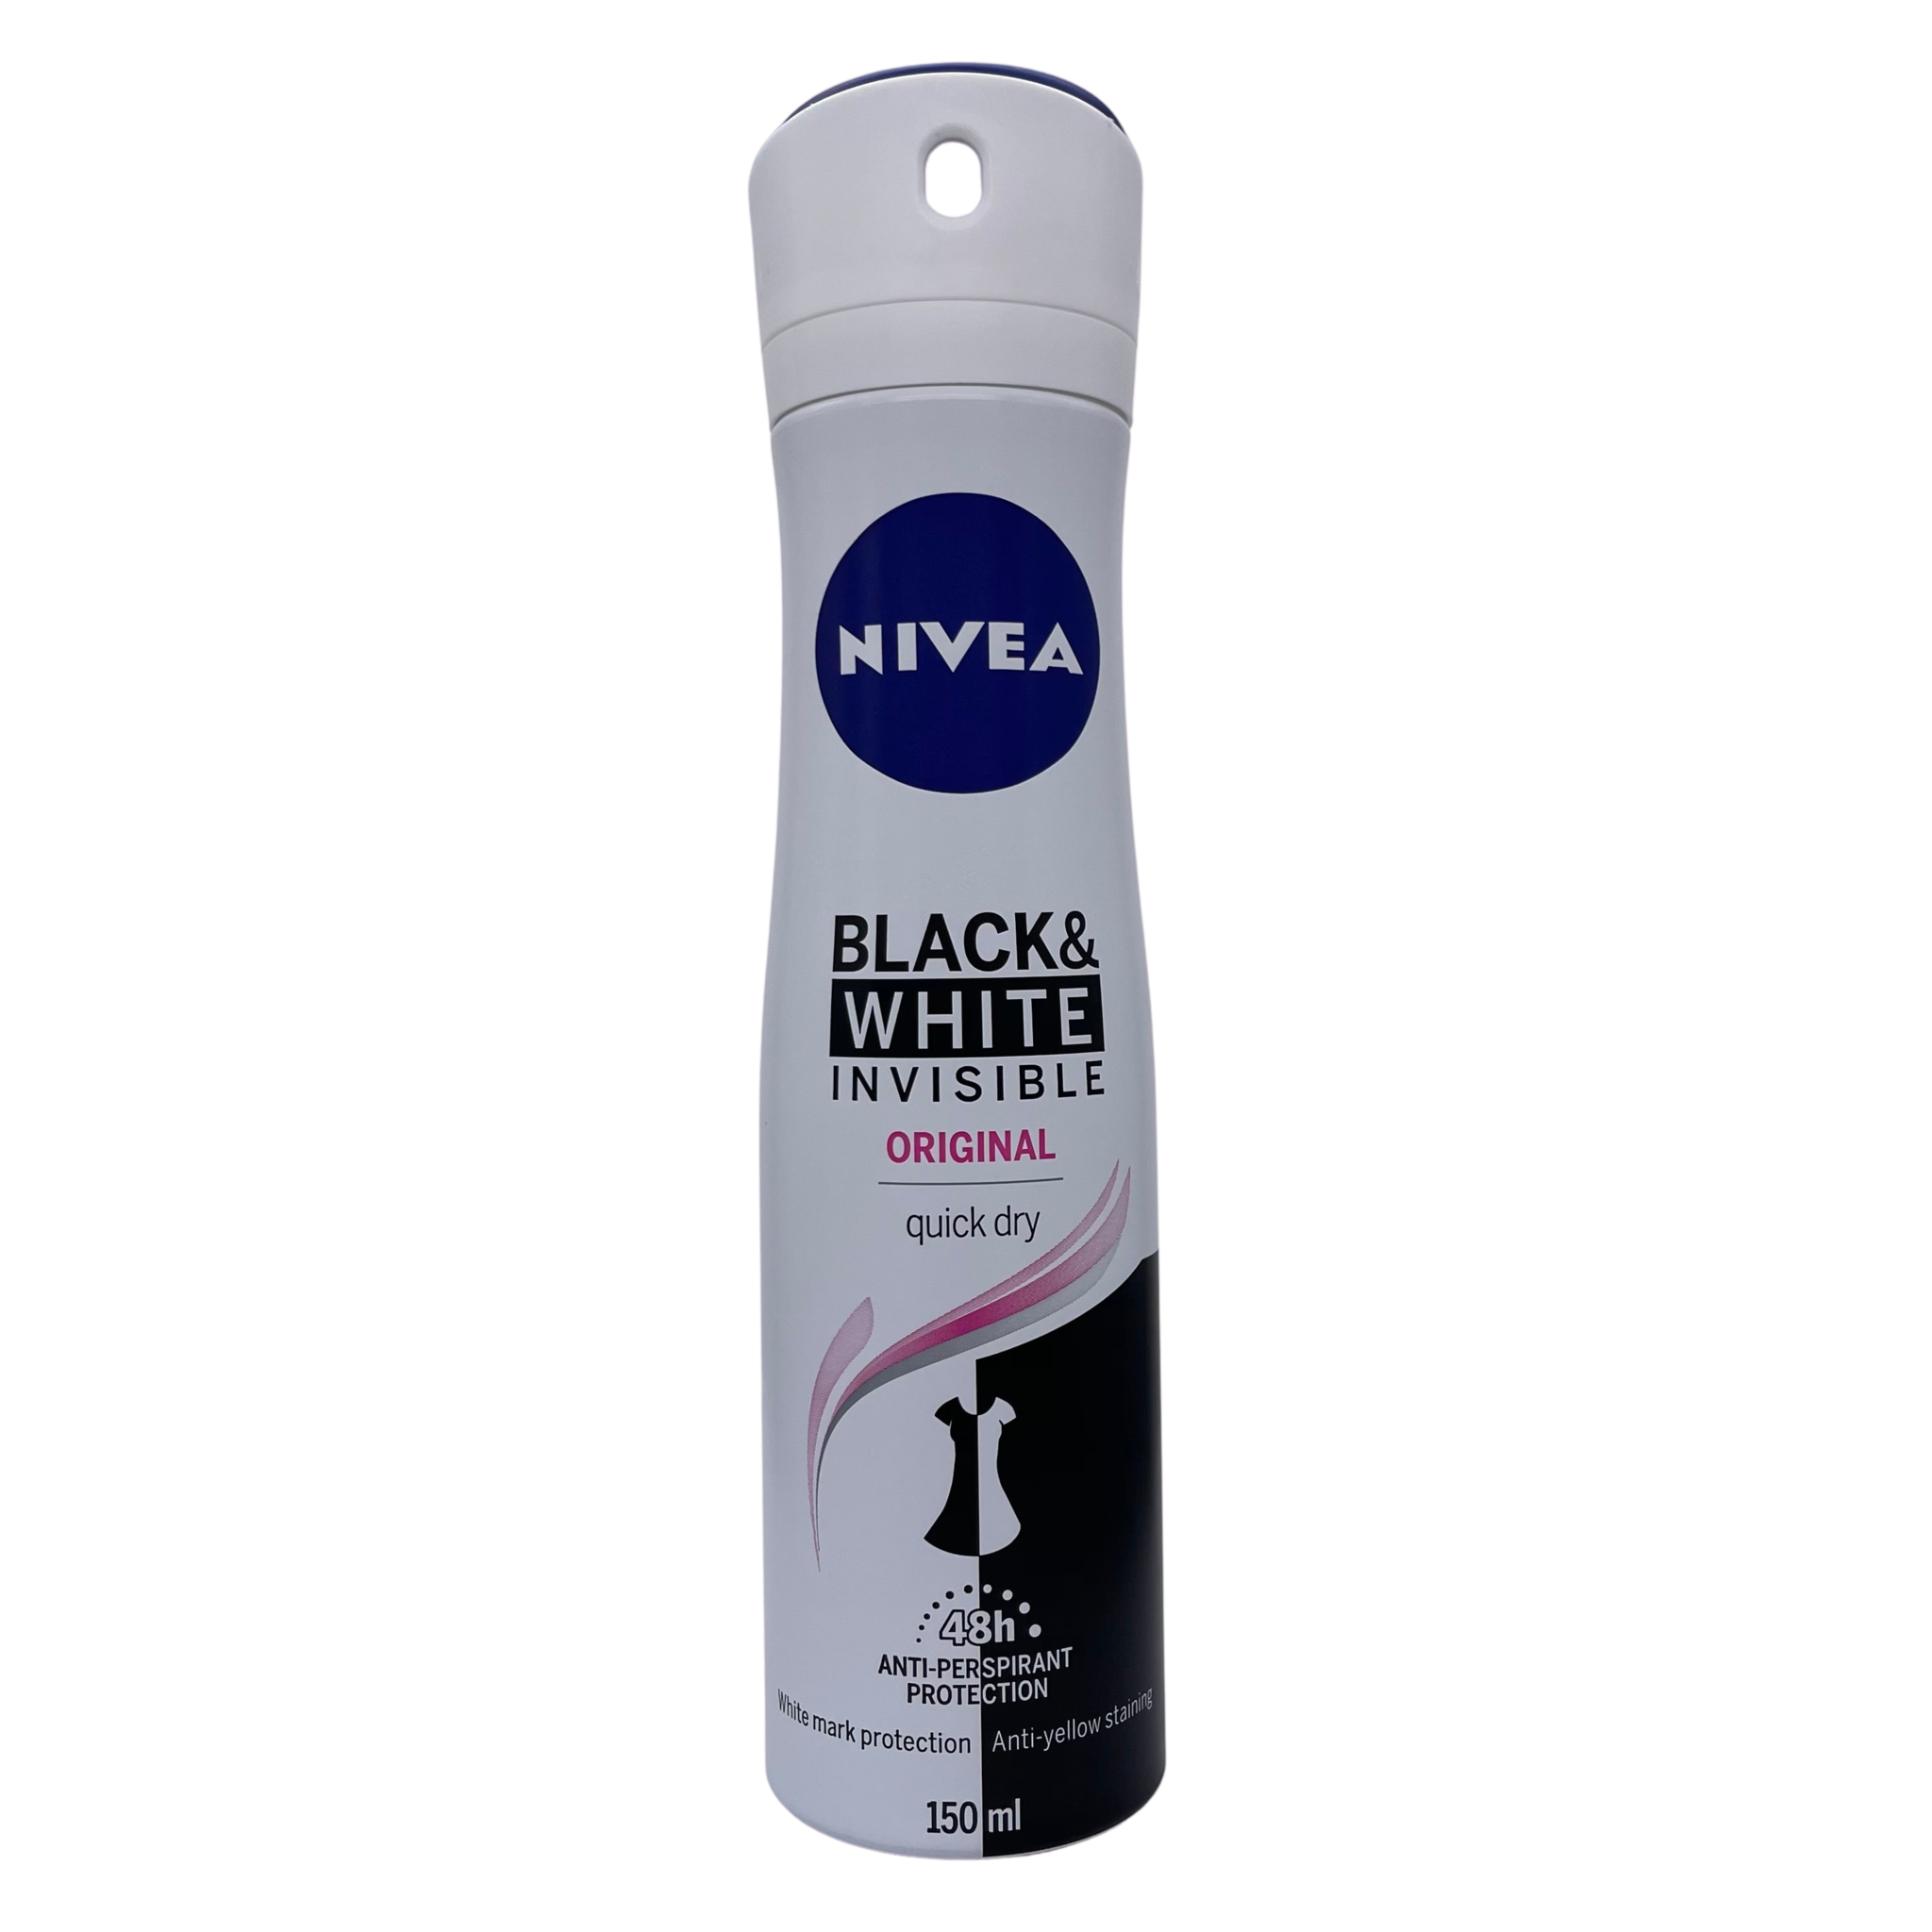 Nivea Black & White Invisible Original deodorant spray 150ml